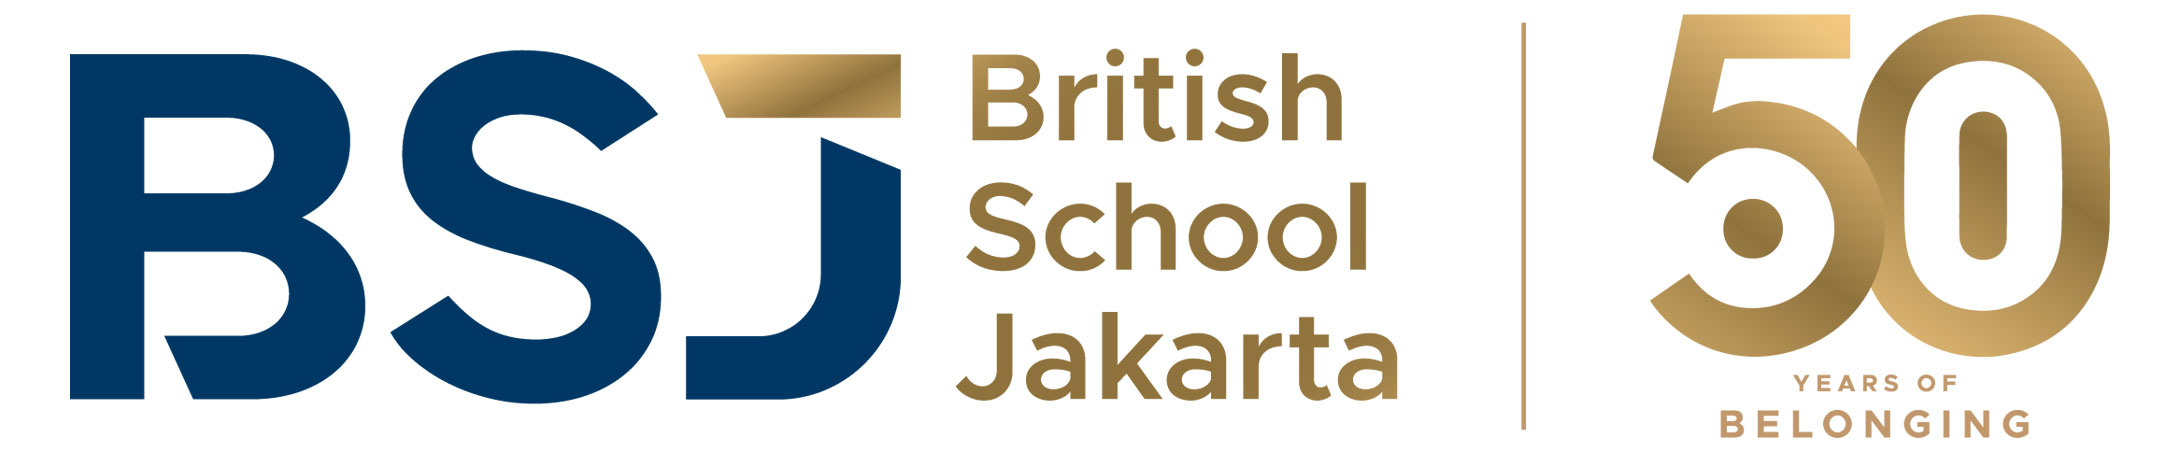 British School Jakarta's 50th anniversary celebrated with spirited ...